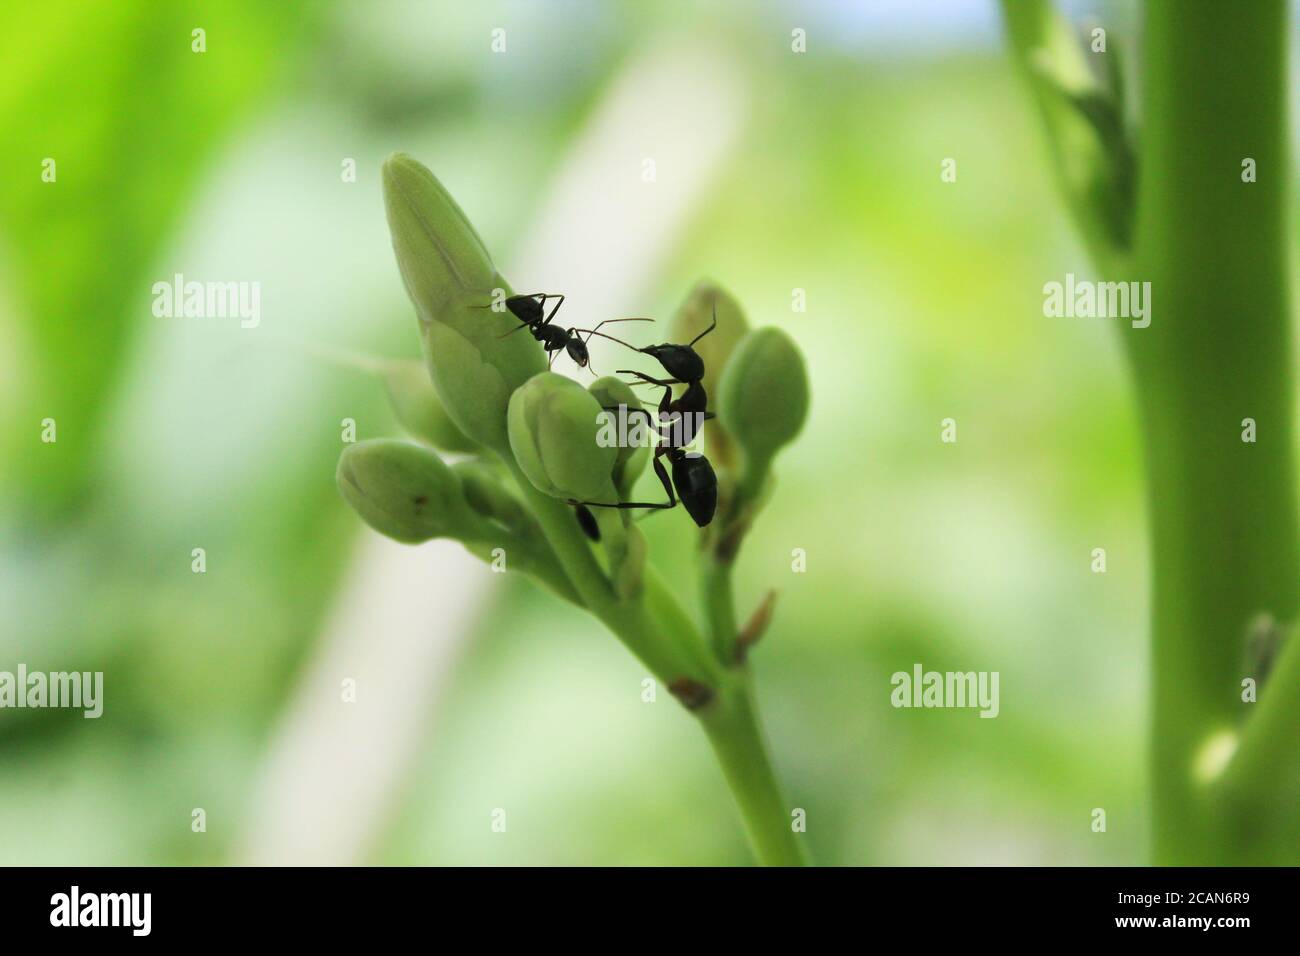 Fotografia di formica nera su fiore, nuova immagine di scorta di formica come avete bisogno. Foto Stock